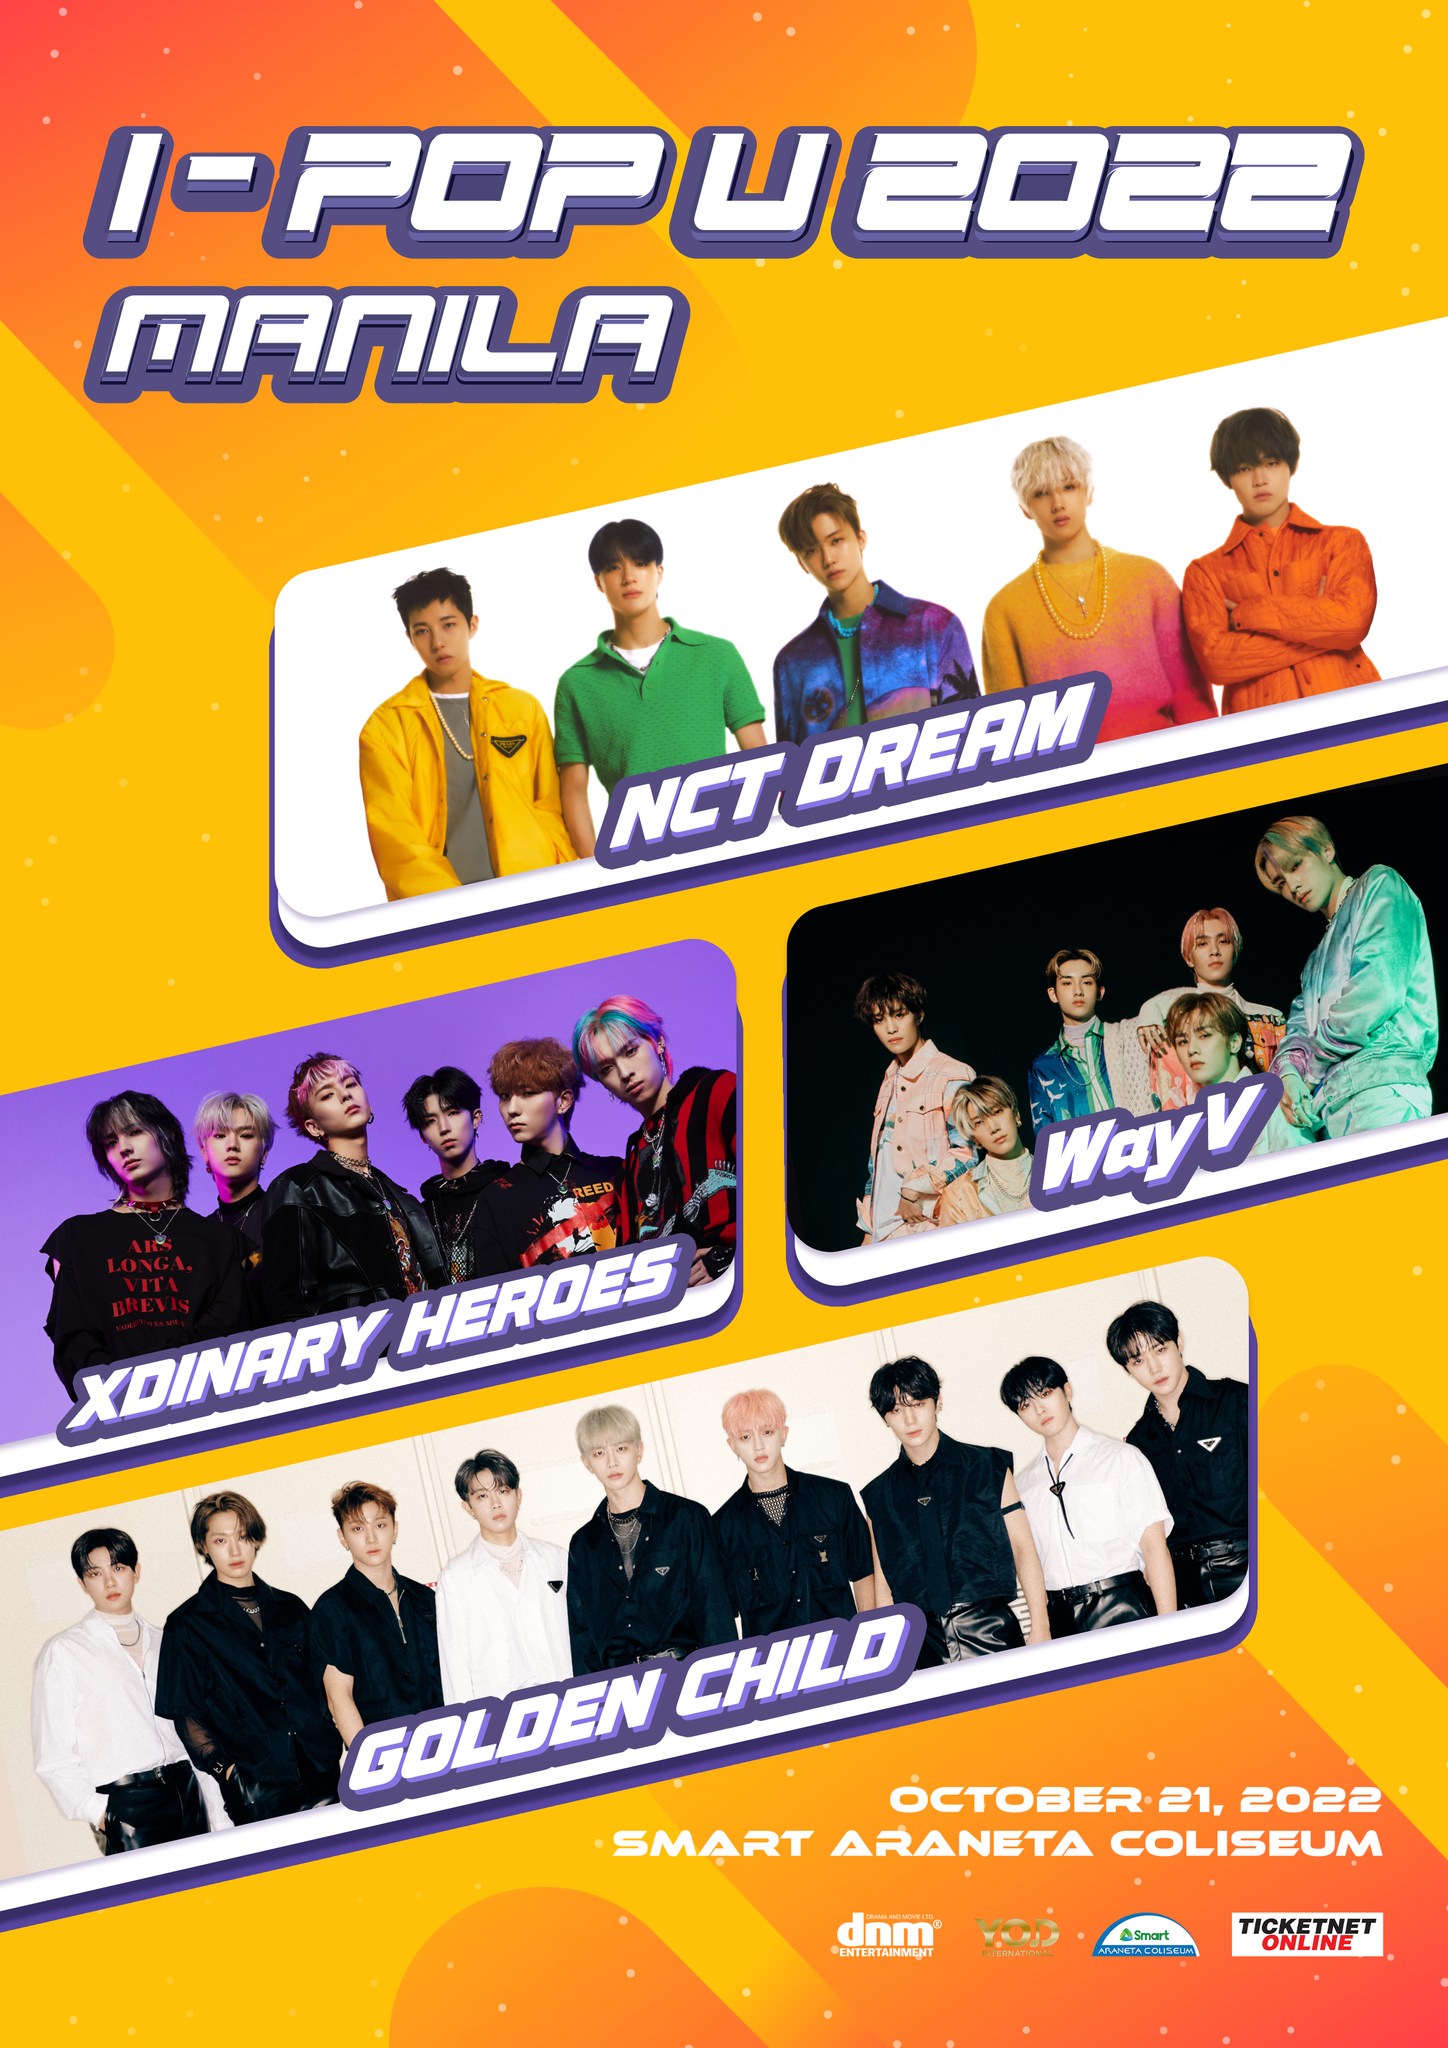 7 Metro Manila Events This October 2022 - I-POP U